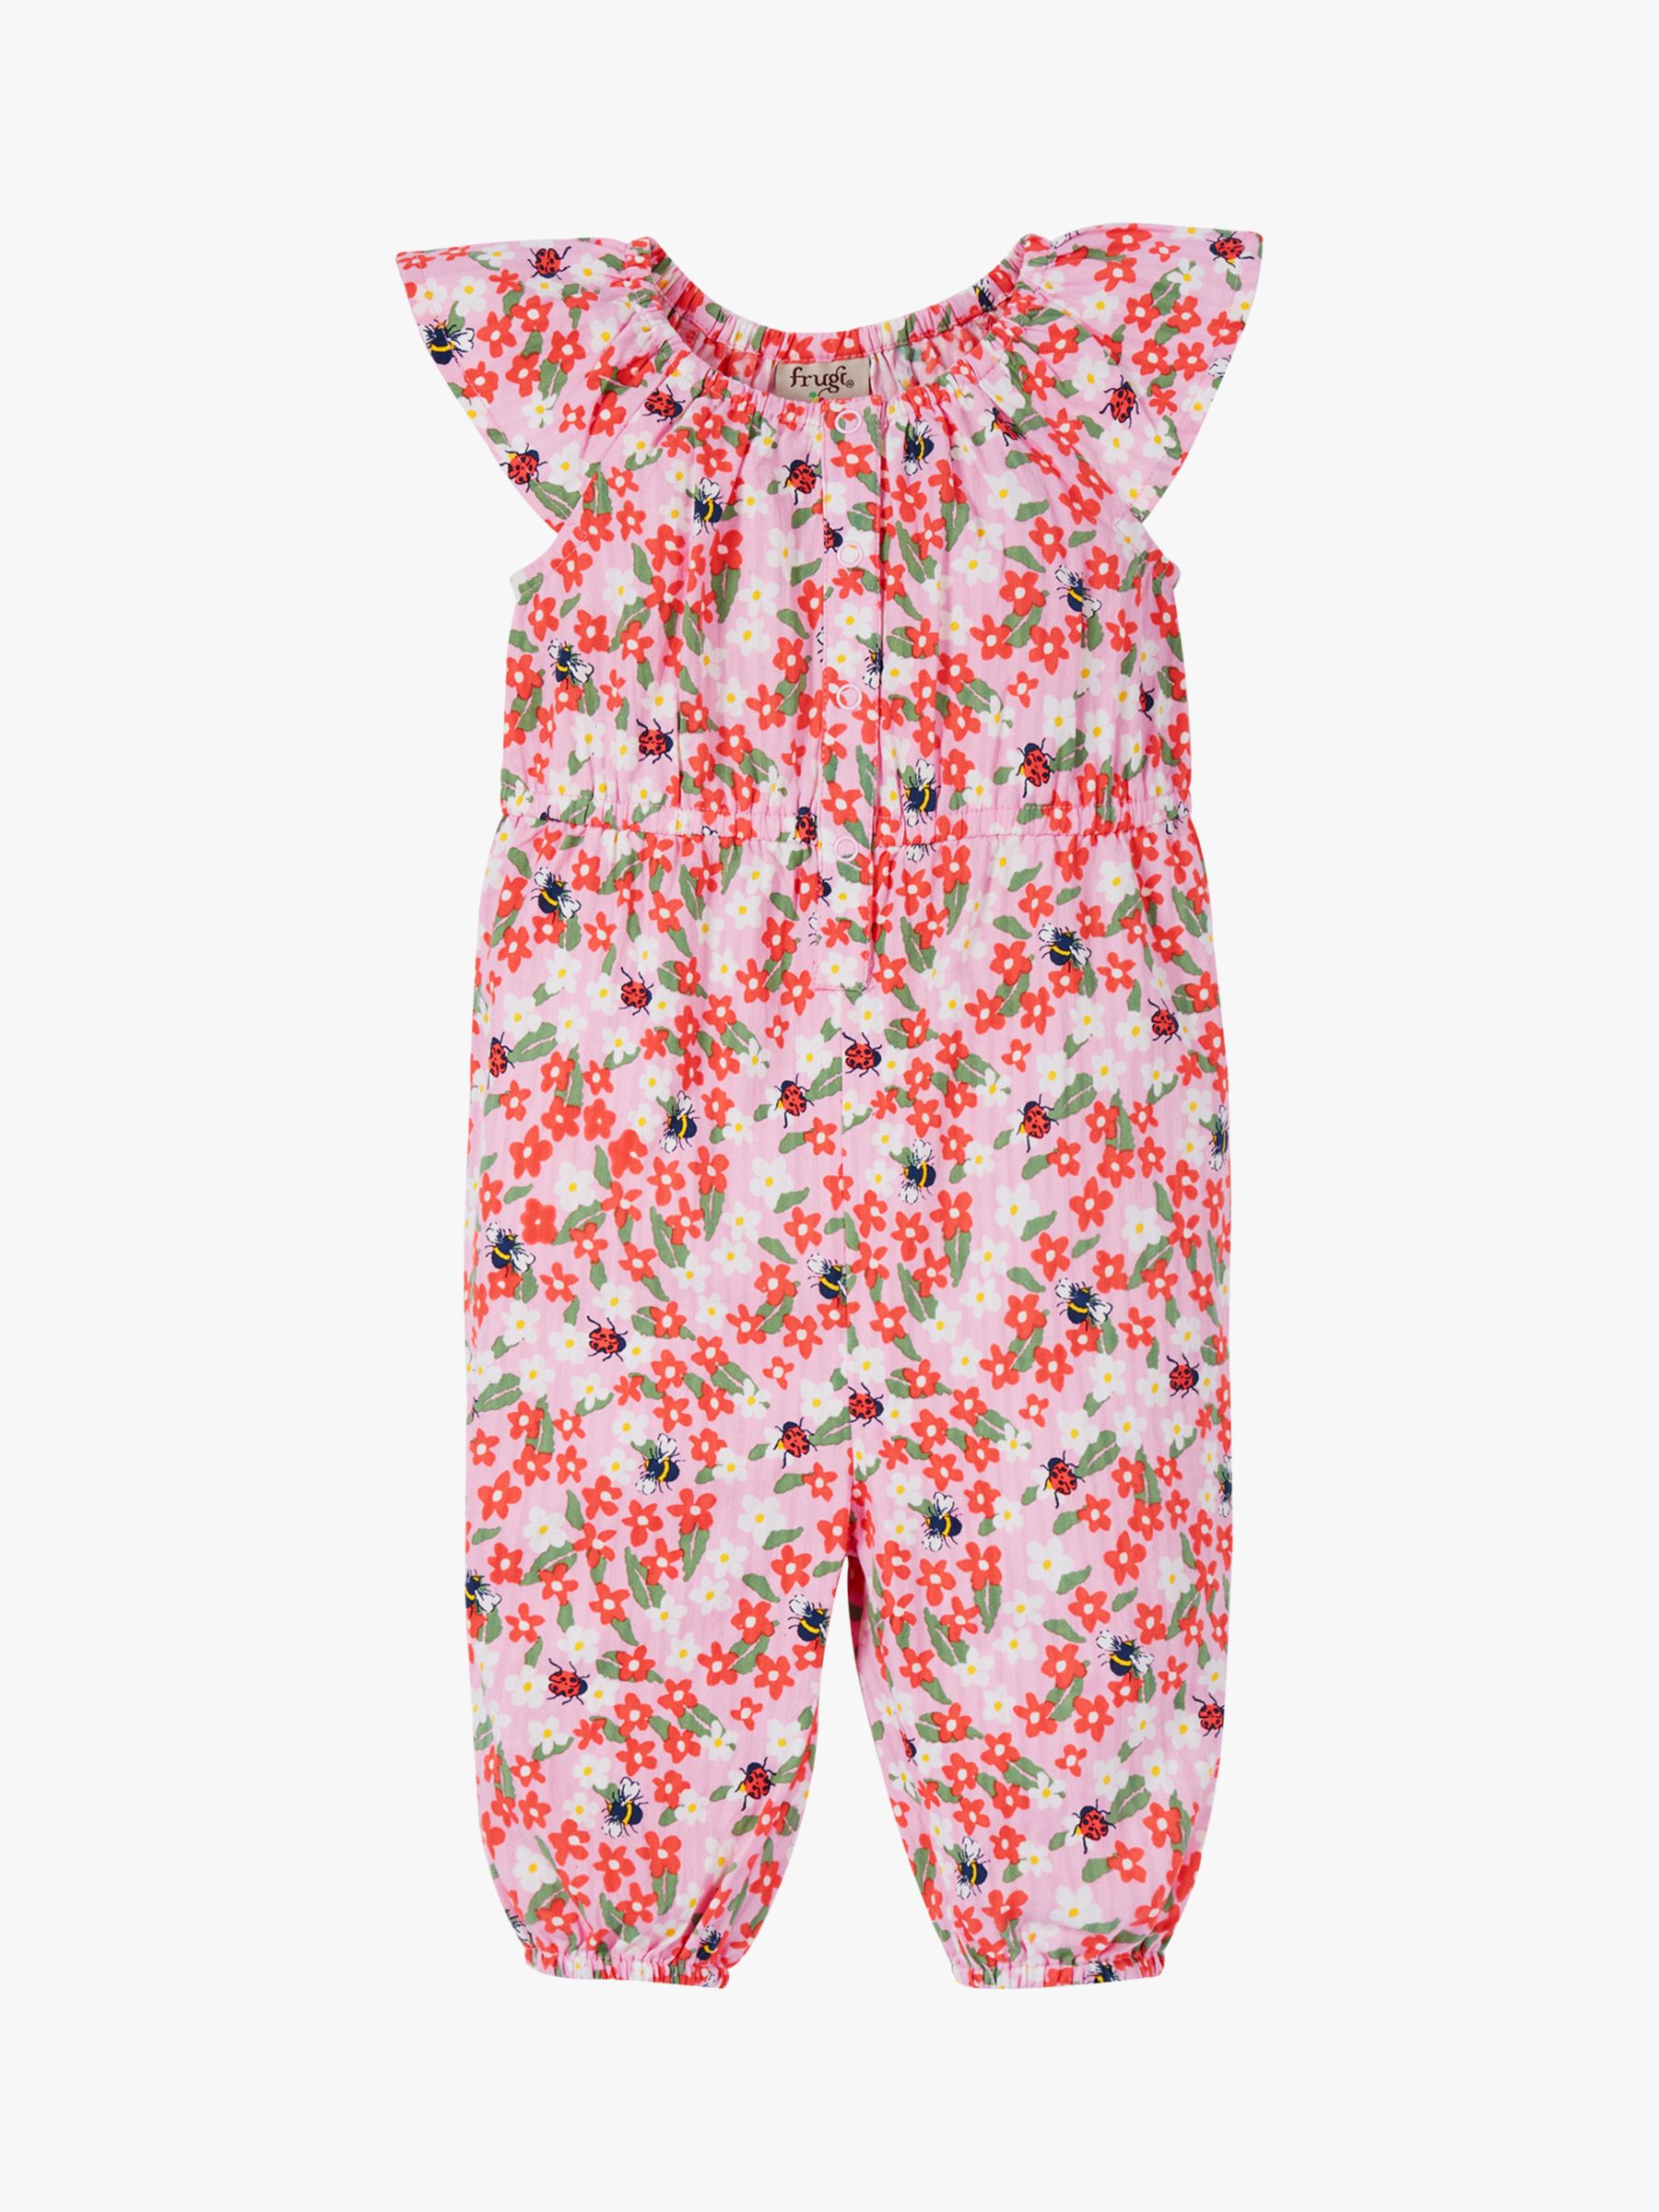 Frugi Baby Martha Organic Cotton Floral Fun Playsuit, Pink/Multi, 12-18 months